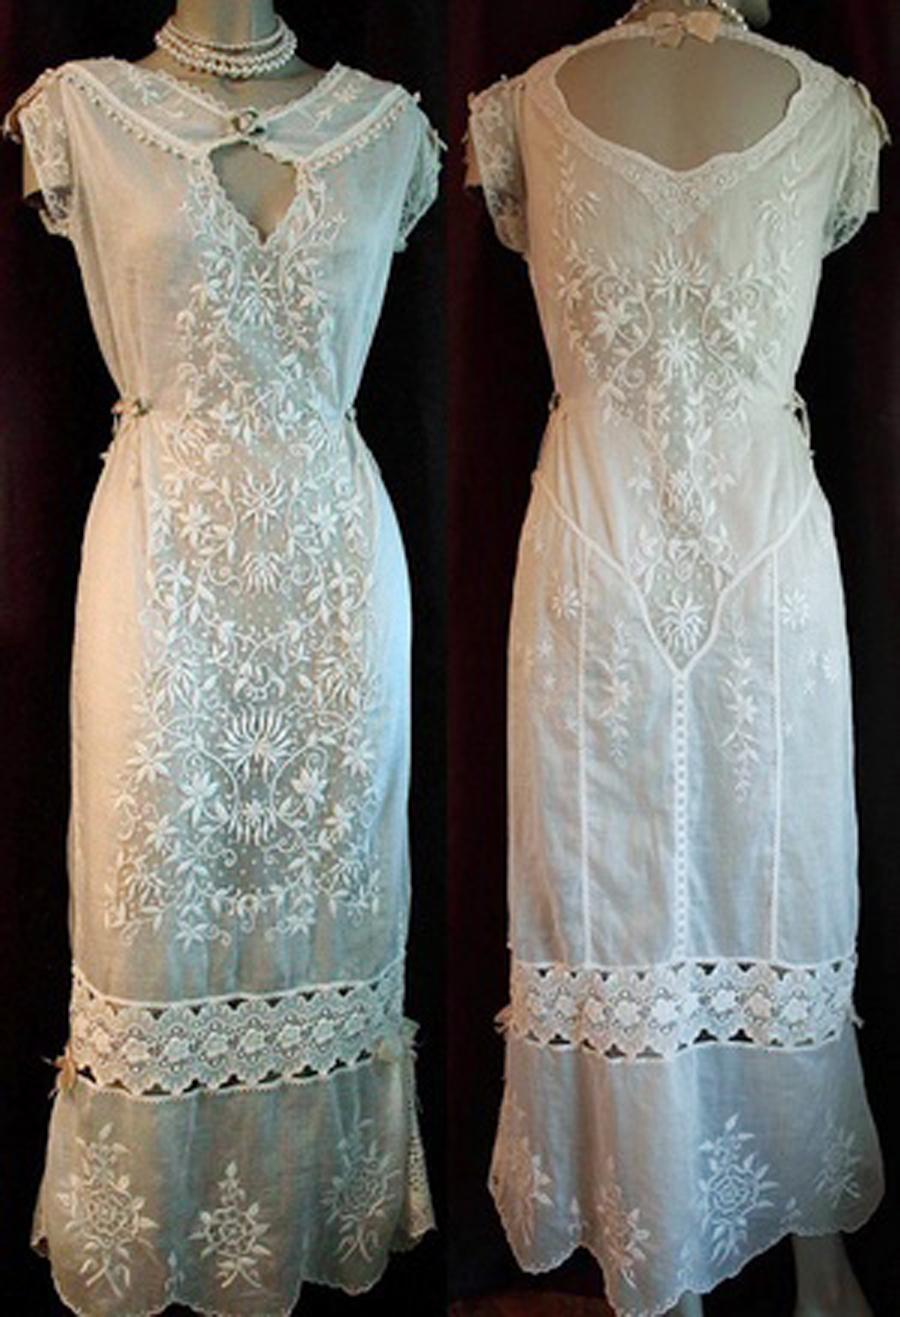 Les robes de boudior romantiques du début du 20e siècle sont toujours très appréciées et celle-ci est un véritable coup de cœur. Le style sans effort de ce vêtement est si moderne ; les fines broderies et les dentelles mélangées sont un trésor d'art